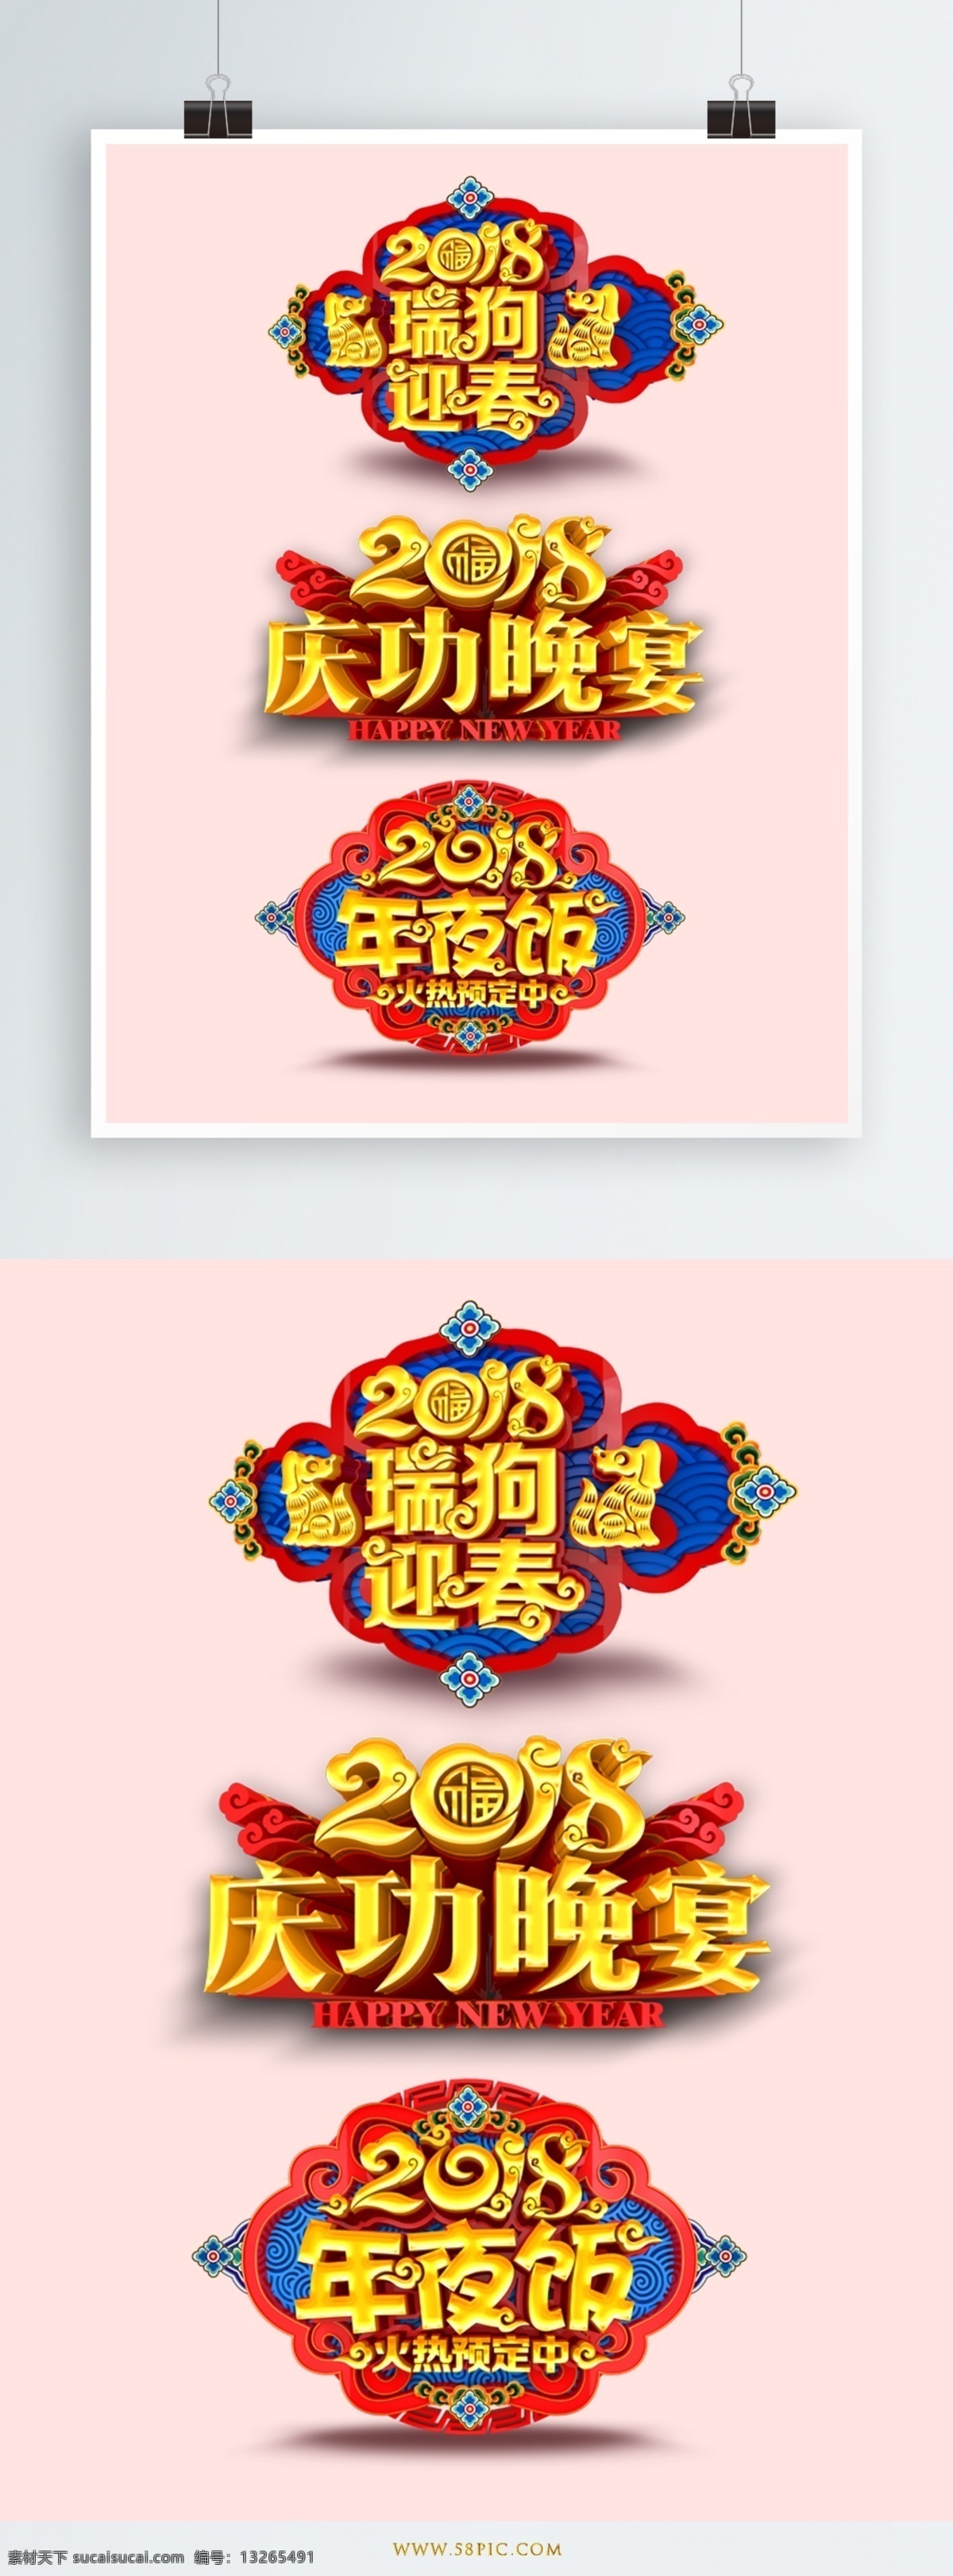 2018 瑞 狗 迎春 艺术 字体 艺术字体 立体字 字体设计 新年元素 中国风字体 新年字体